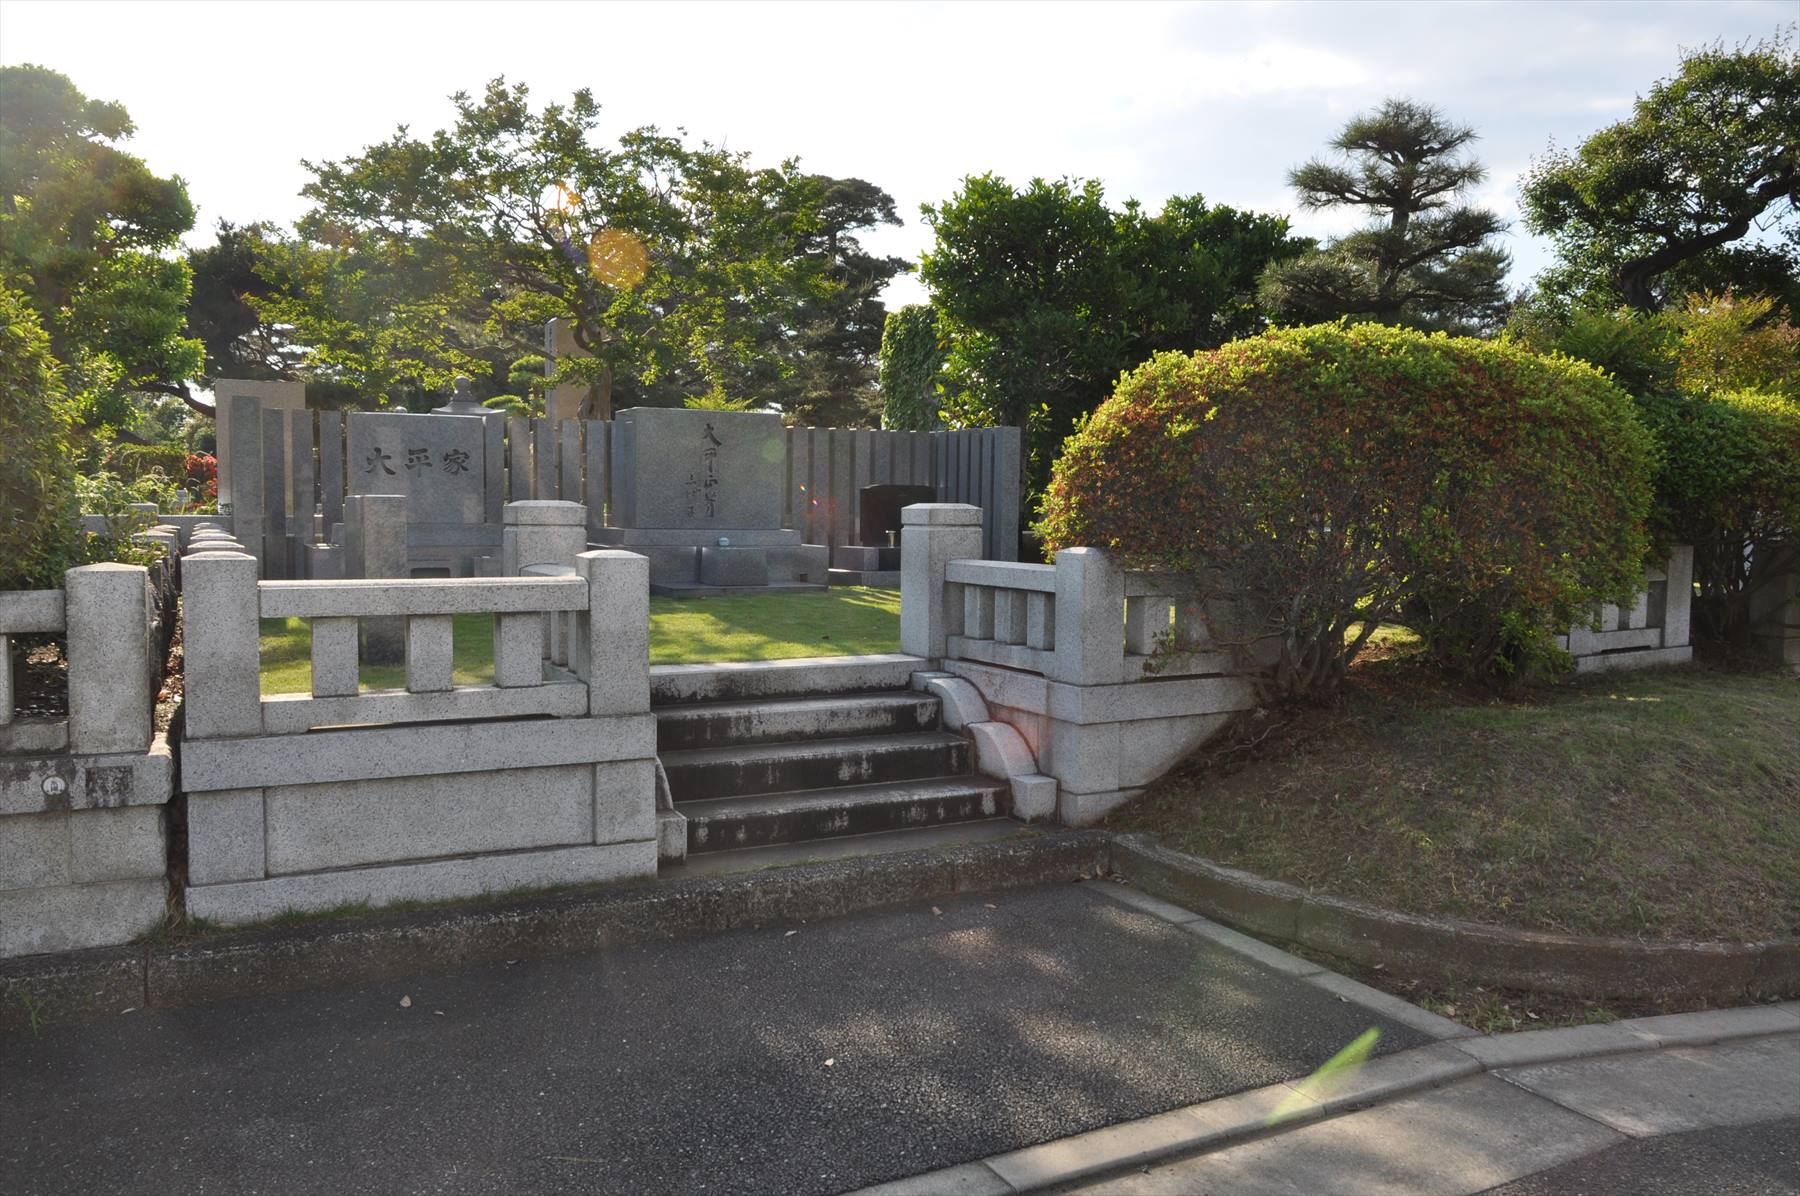 著名人 有名人の墓 大平正芳 東京都 多磨霊園 霊園とお墓のはなし